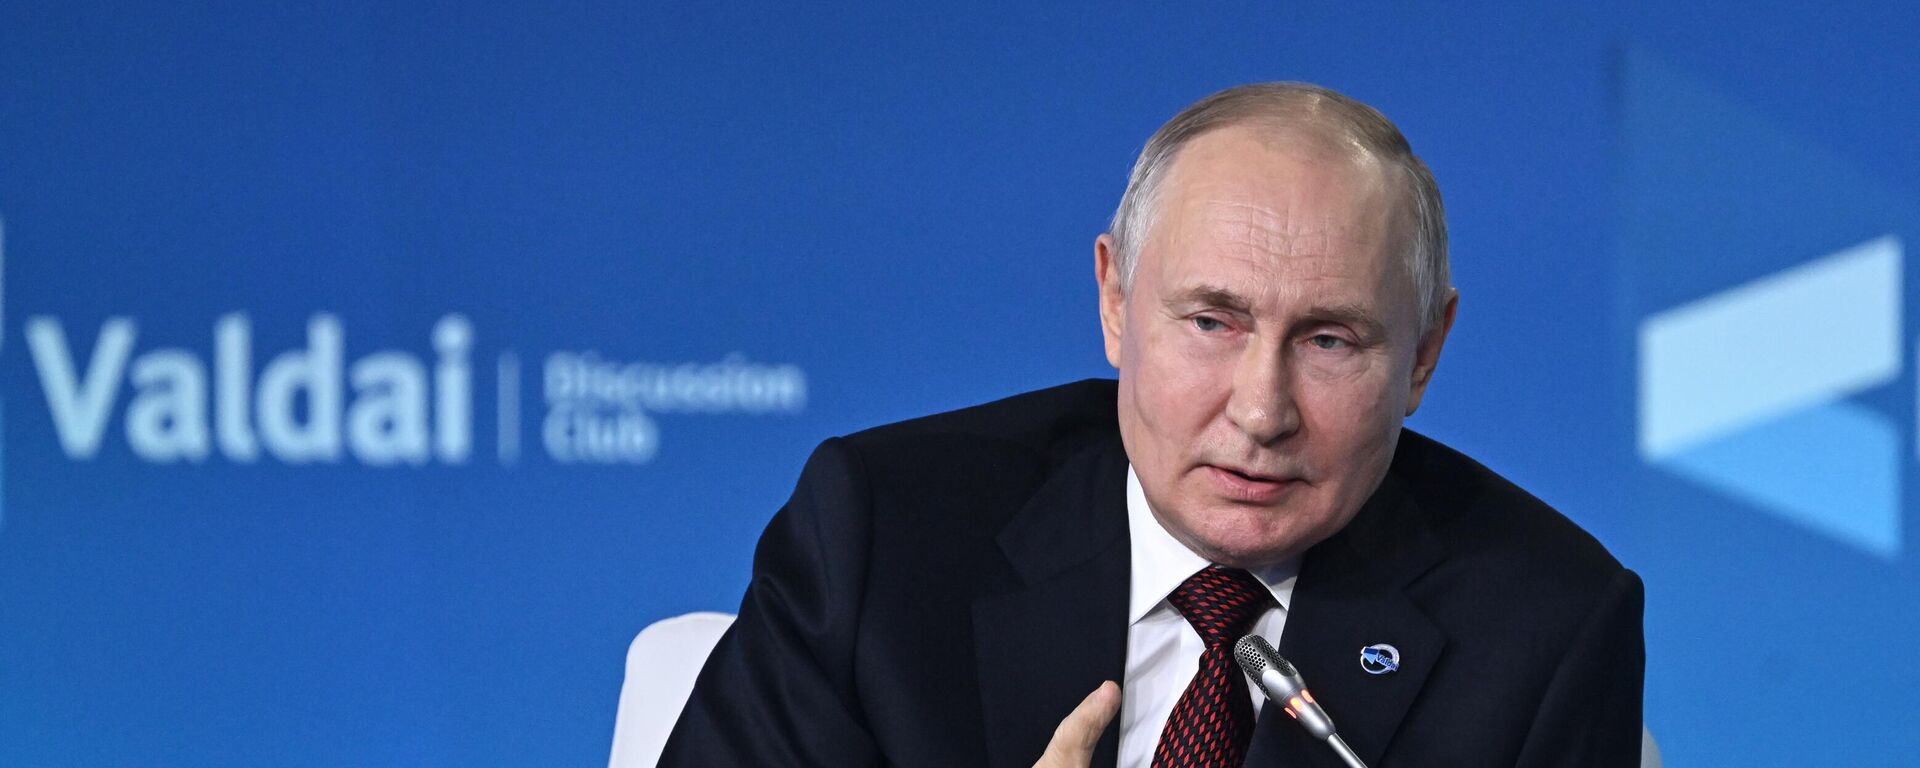 Vladímir Putin, el Presidente ruso, interviene en la sesión plenaria de la 20ª Reunión Anual del Club Internacional de Debate Valdái  - Sputnik Mundo, 1920, 05.10.2023